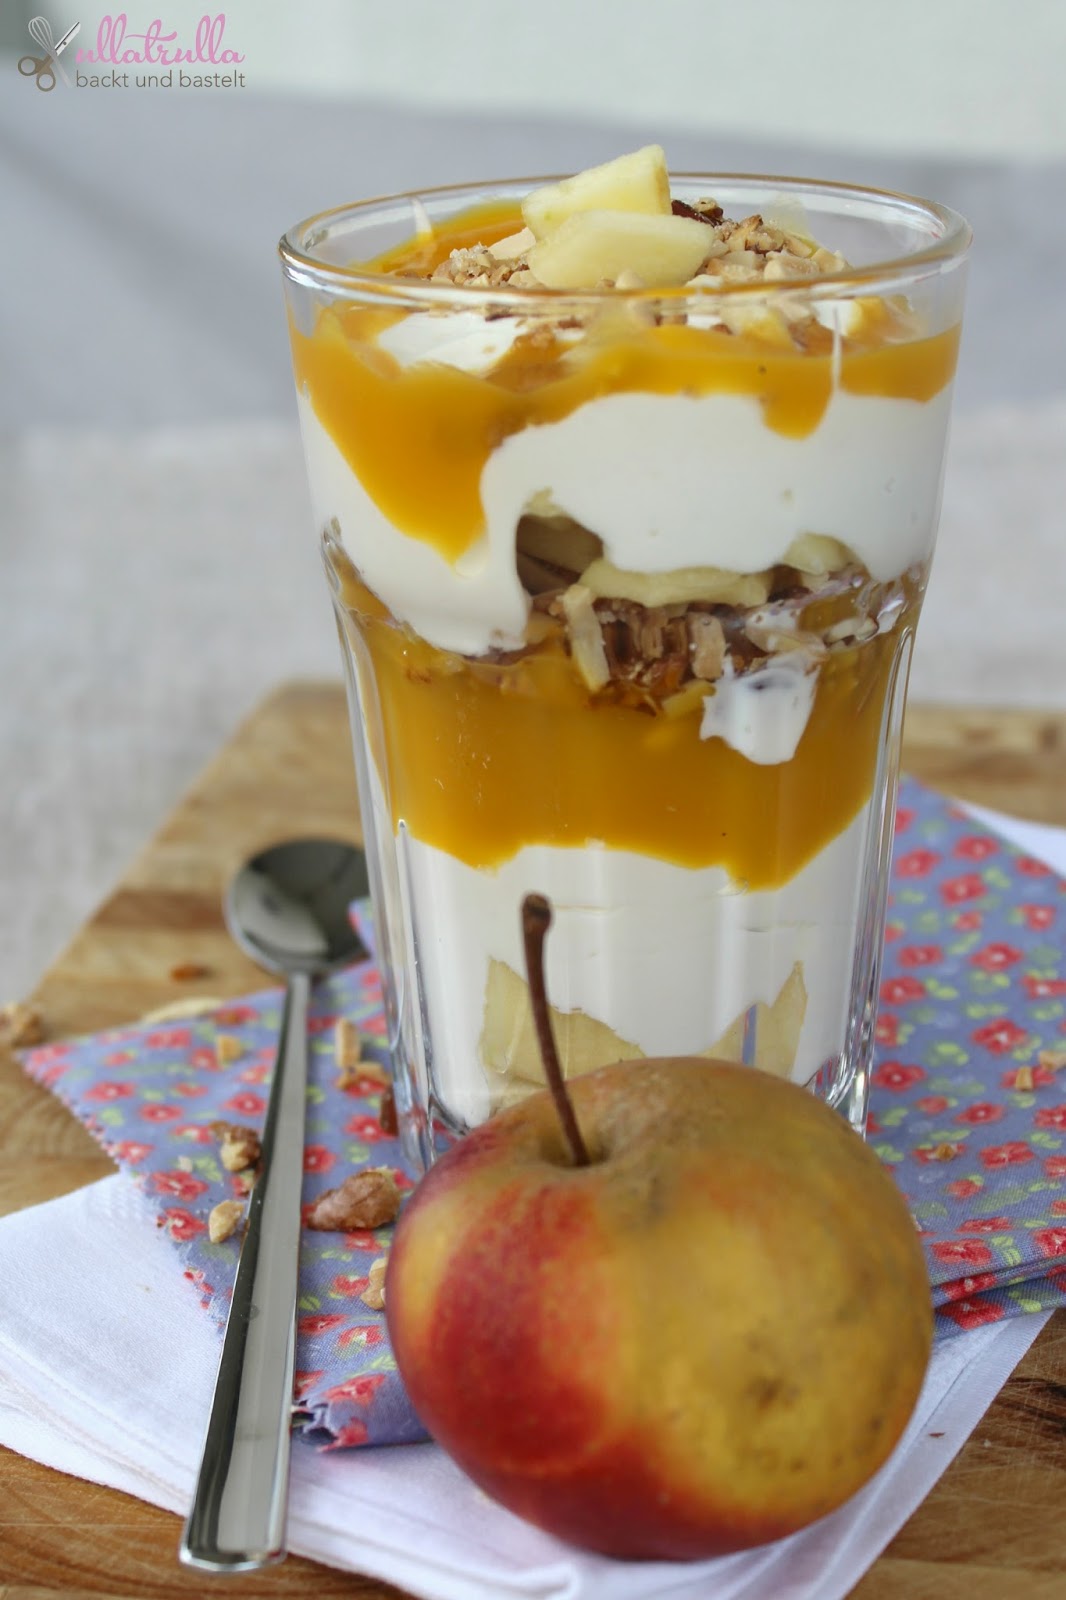 ullatrulla backt und bastelt: Apfel küsst Mango | Rezept für ein ...